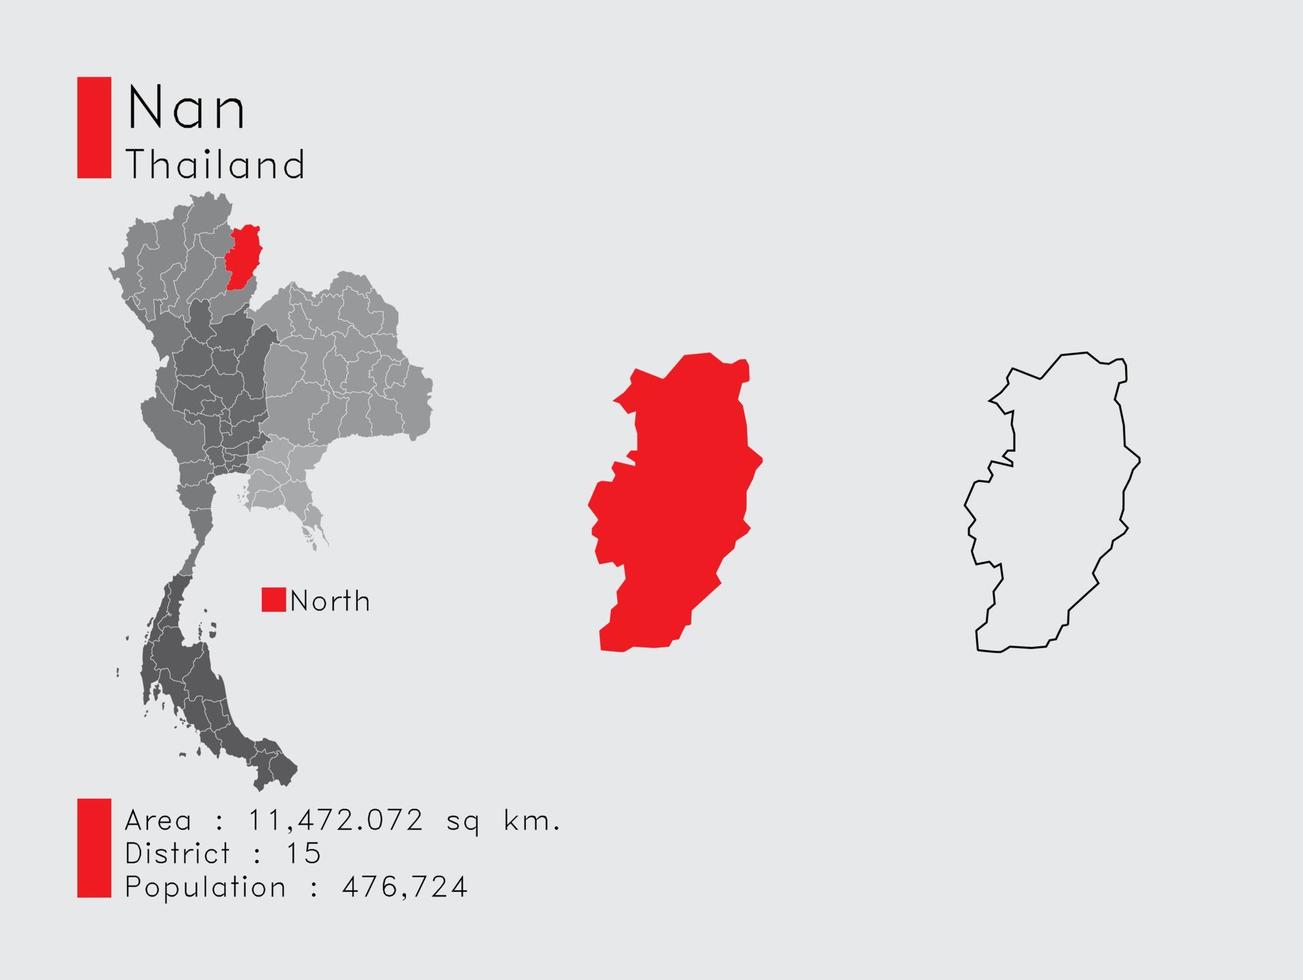 nan position in thailand eine reihe von infografikelementen für die provinz. und Bereich Bezirk Bevölkerung und Gliederung. Vektor mit grauem Hintergrund.